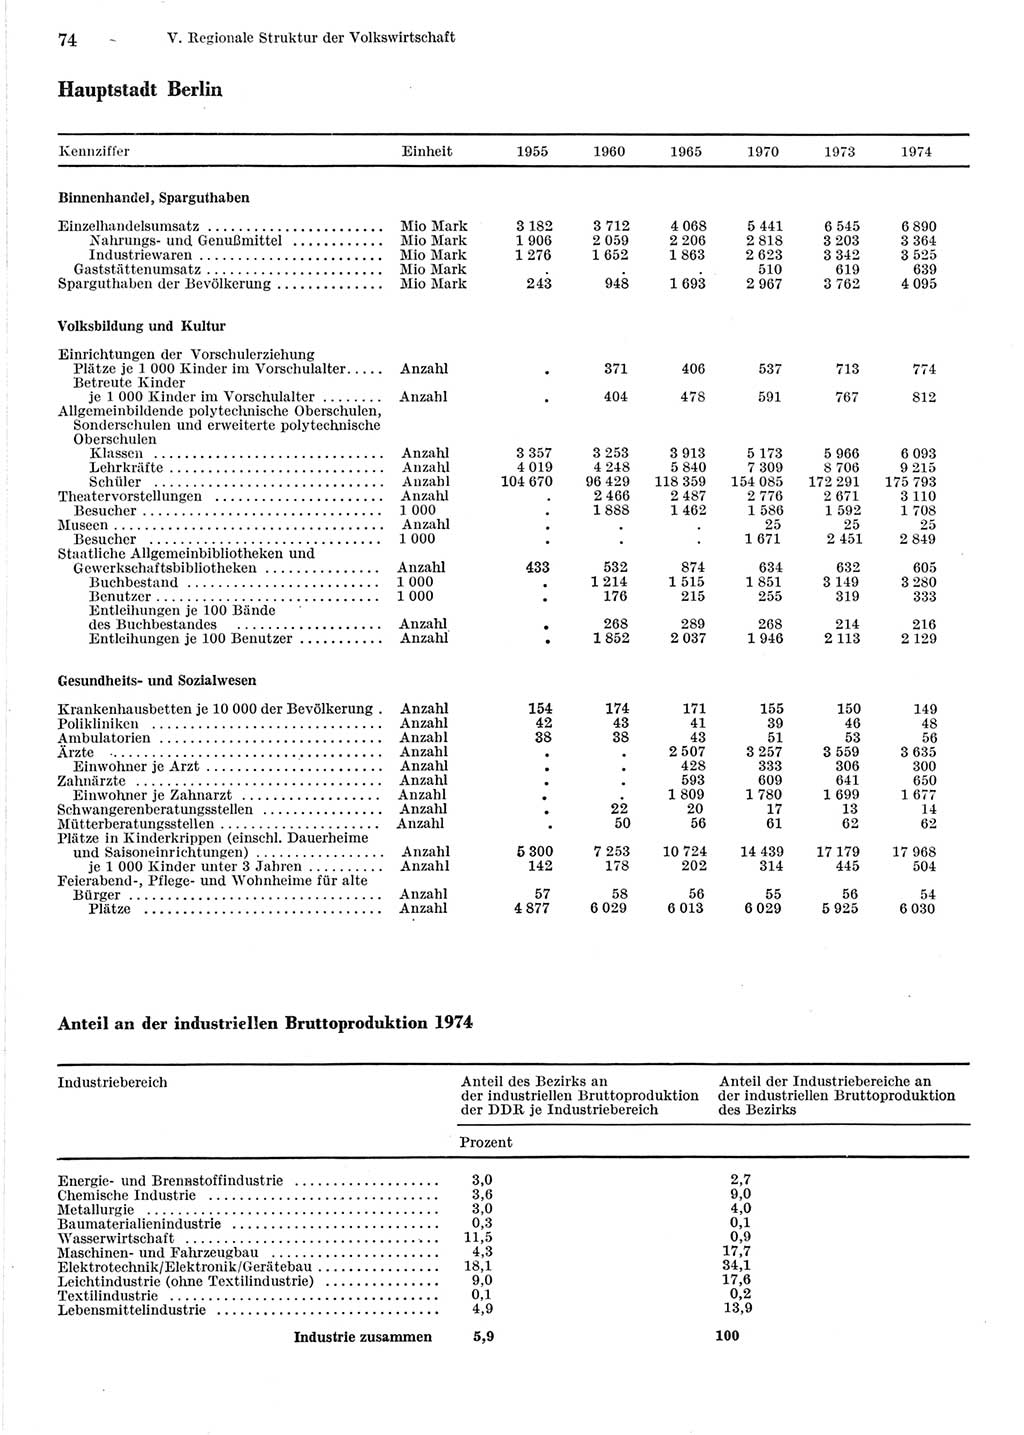 Statistisches Jahrbuch der Deutschen Demokratischen Republik (DDR) 1975, Seite 74 (Stat. Jb. DDR 1975, S. 74)